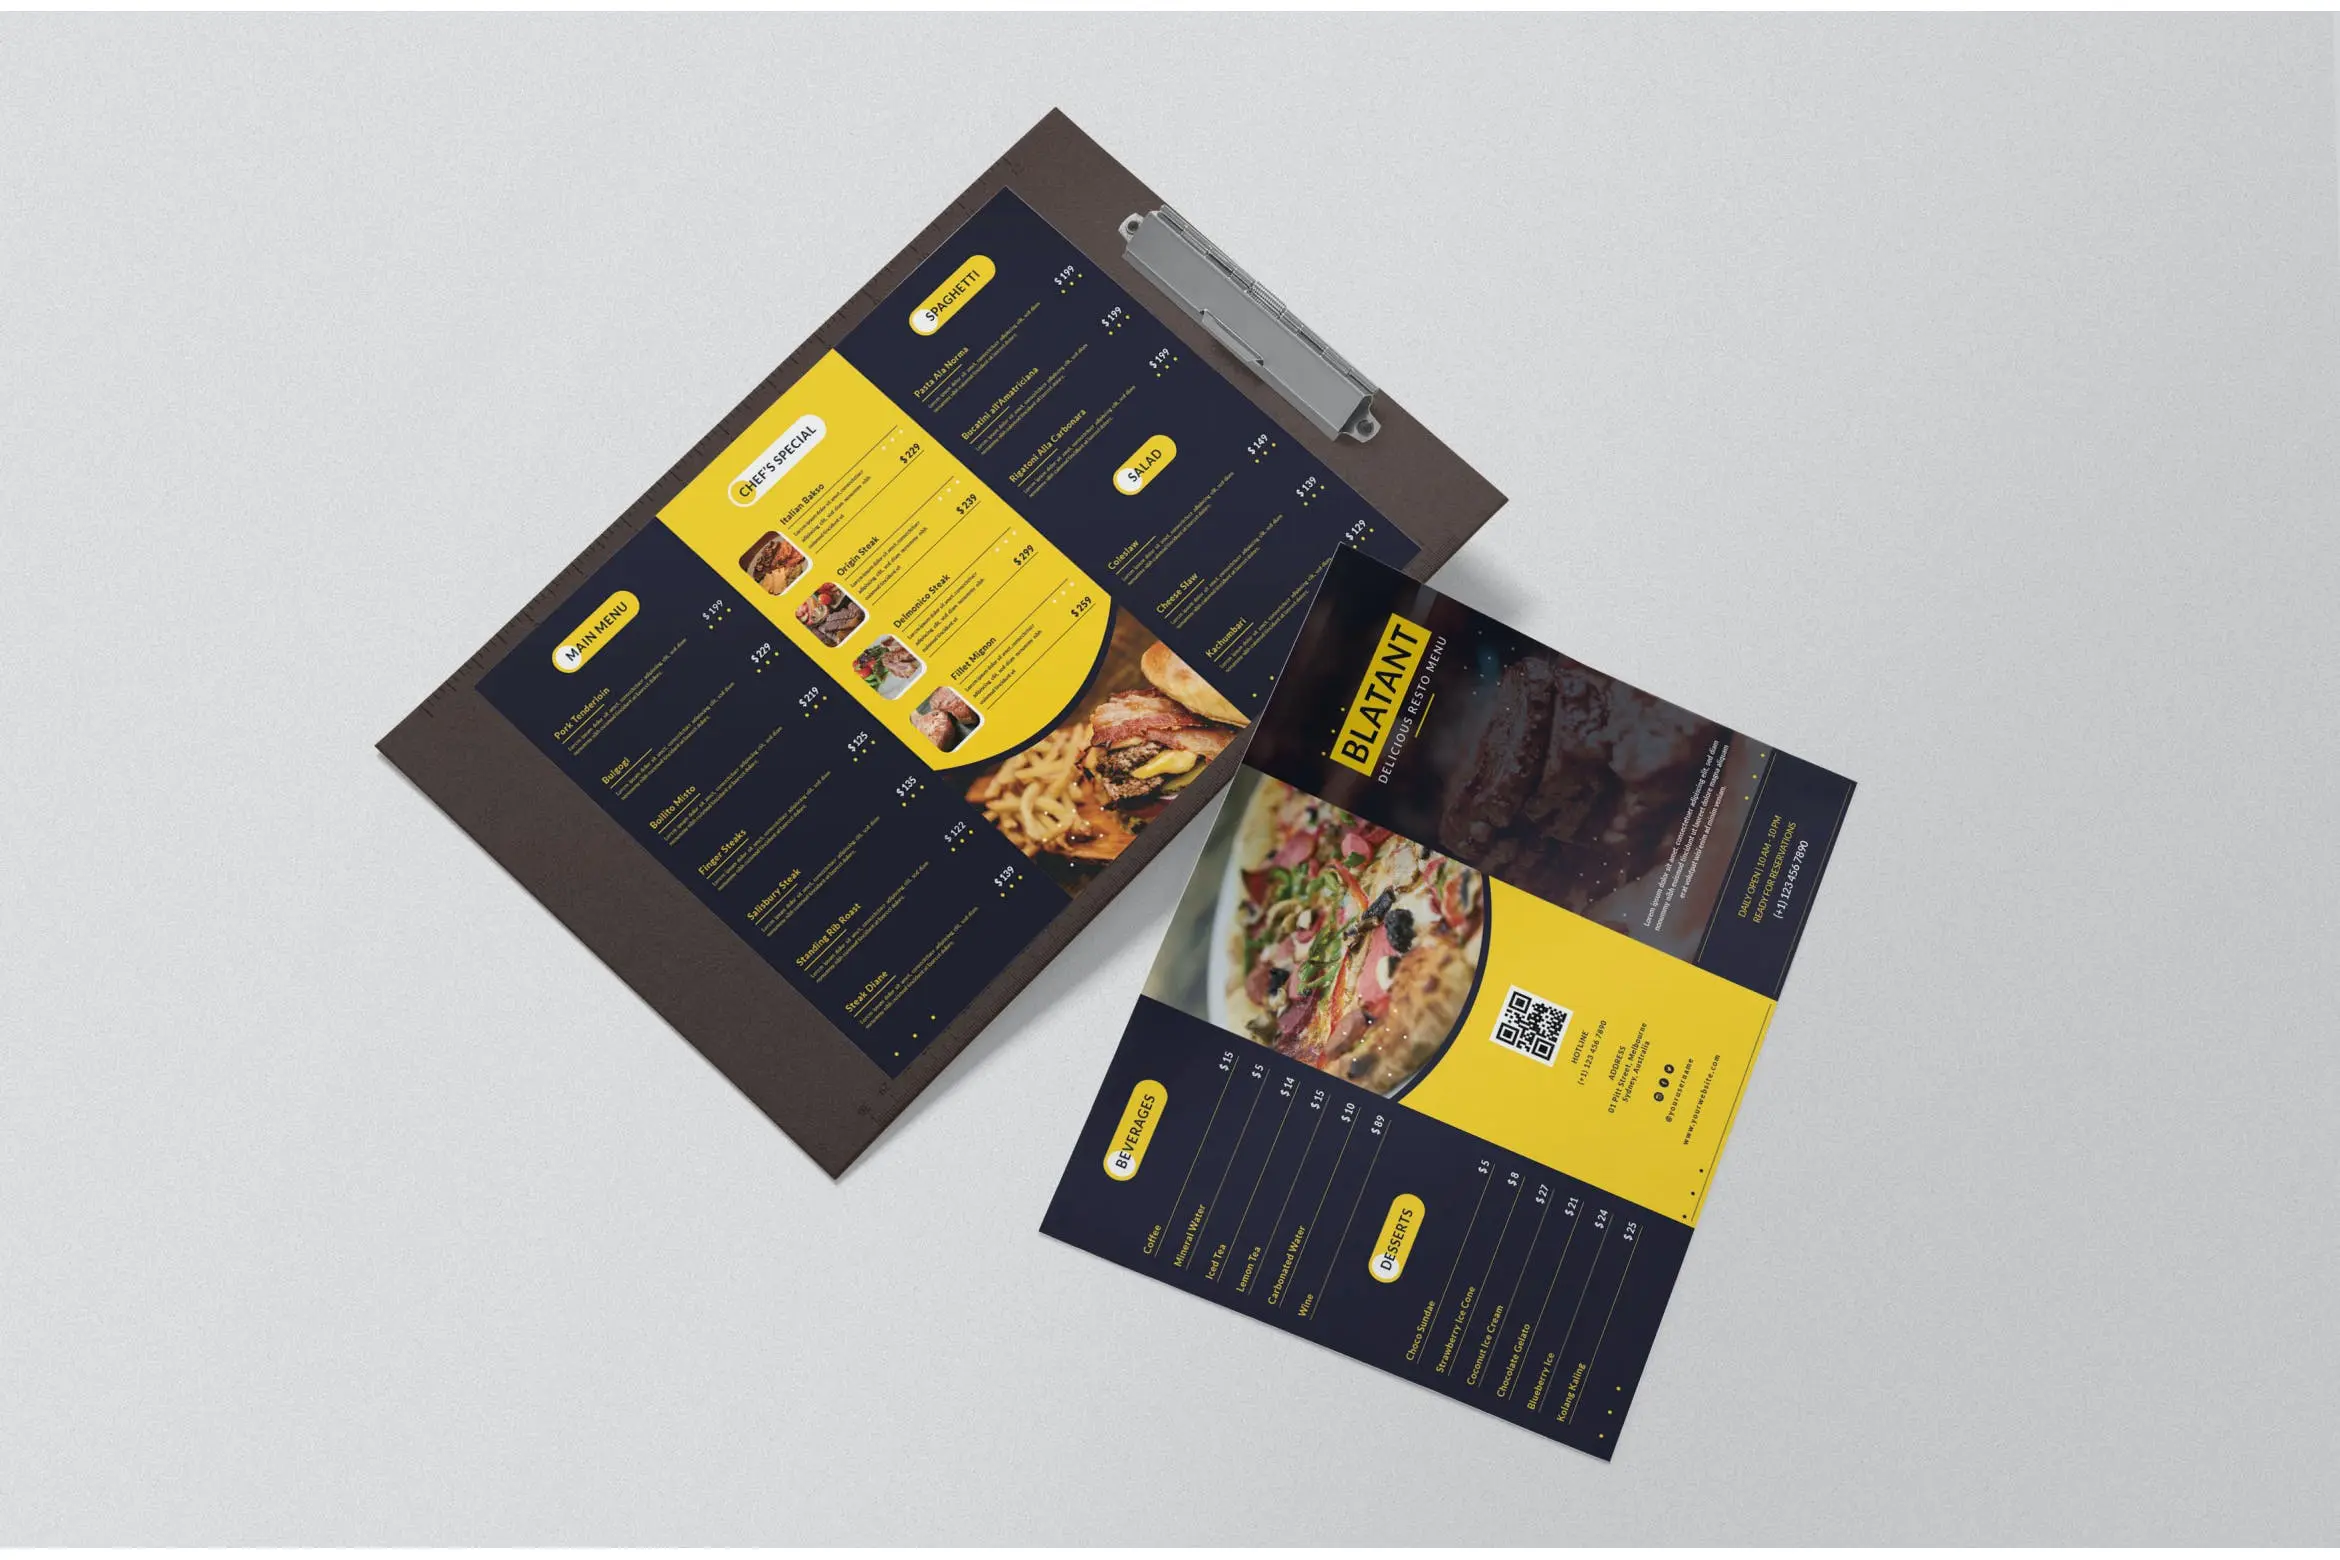 对折页风格牛排餐厅菜单模板PSD设计素材下载Blatant Restaurant Menu